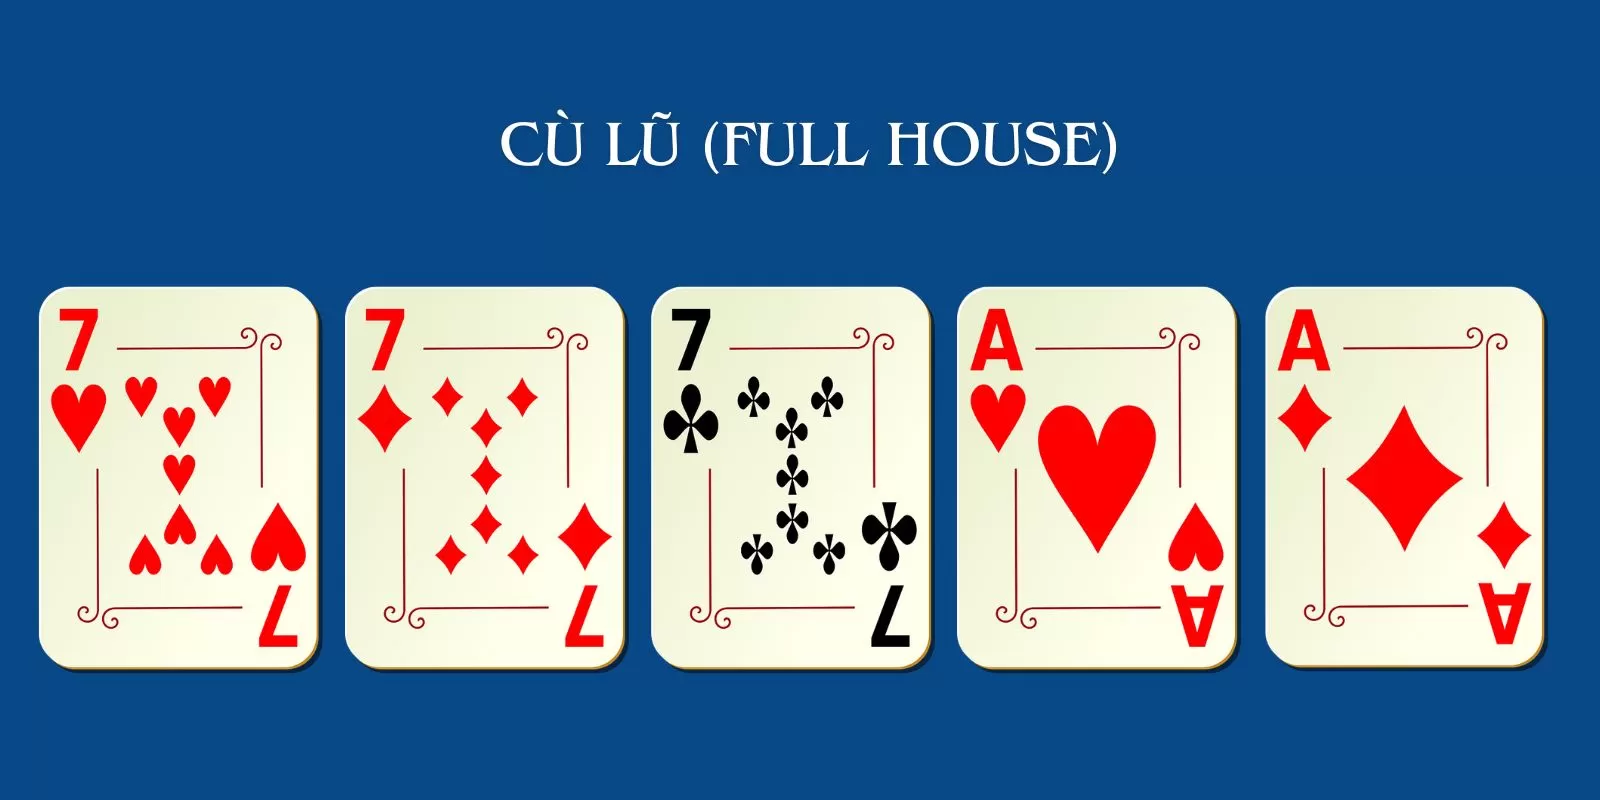 Cù lũ hay còn gọi là Full House được tạo thành bởi ba lá bài giống nhau và một đôi